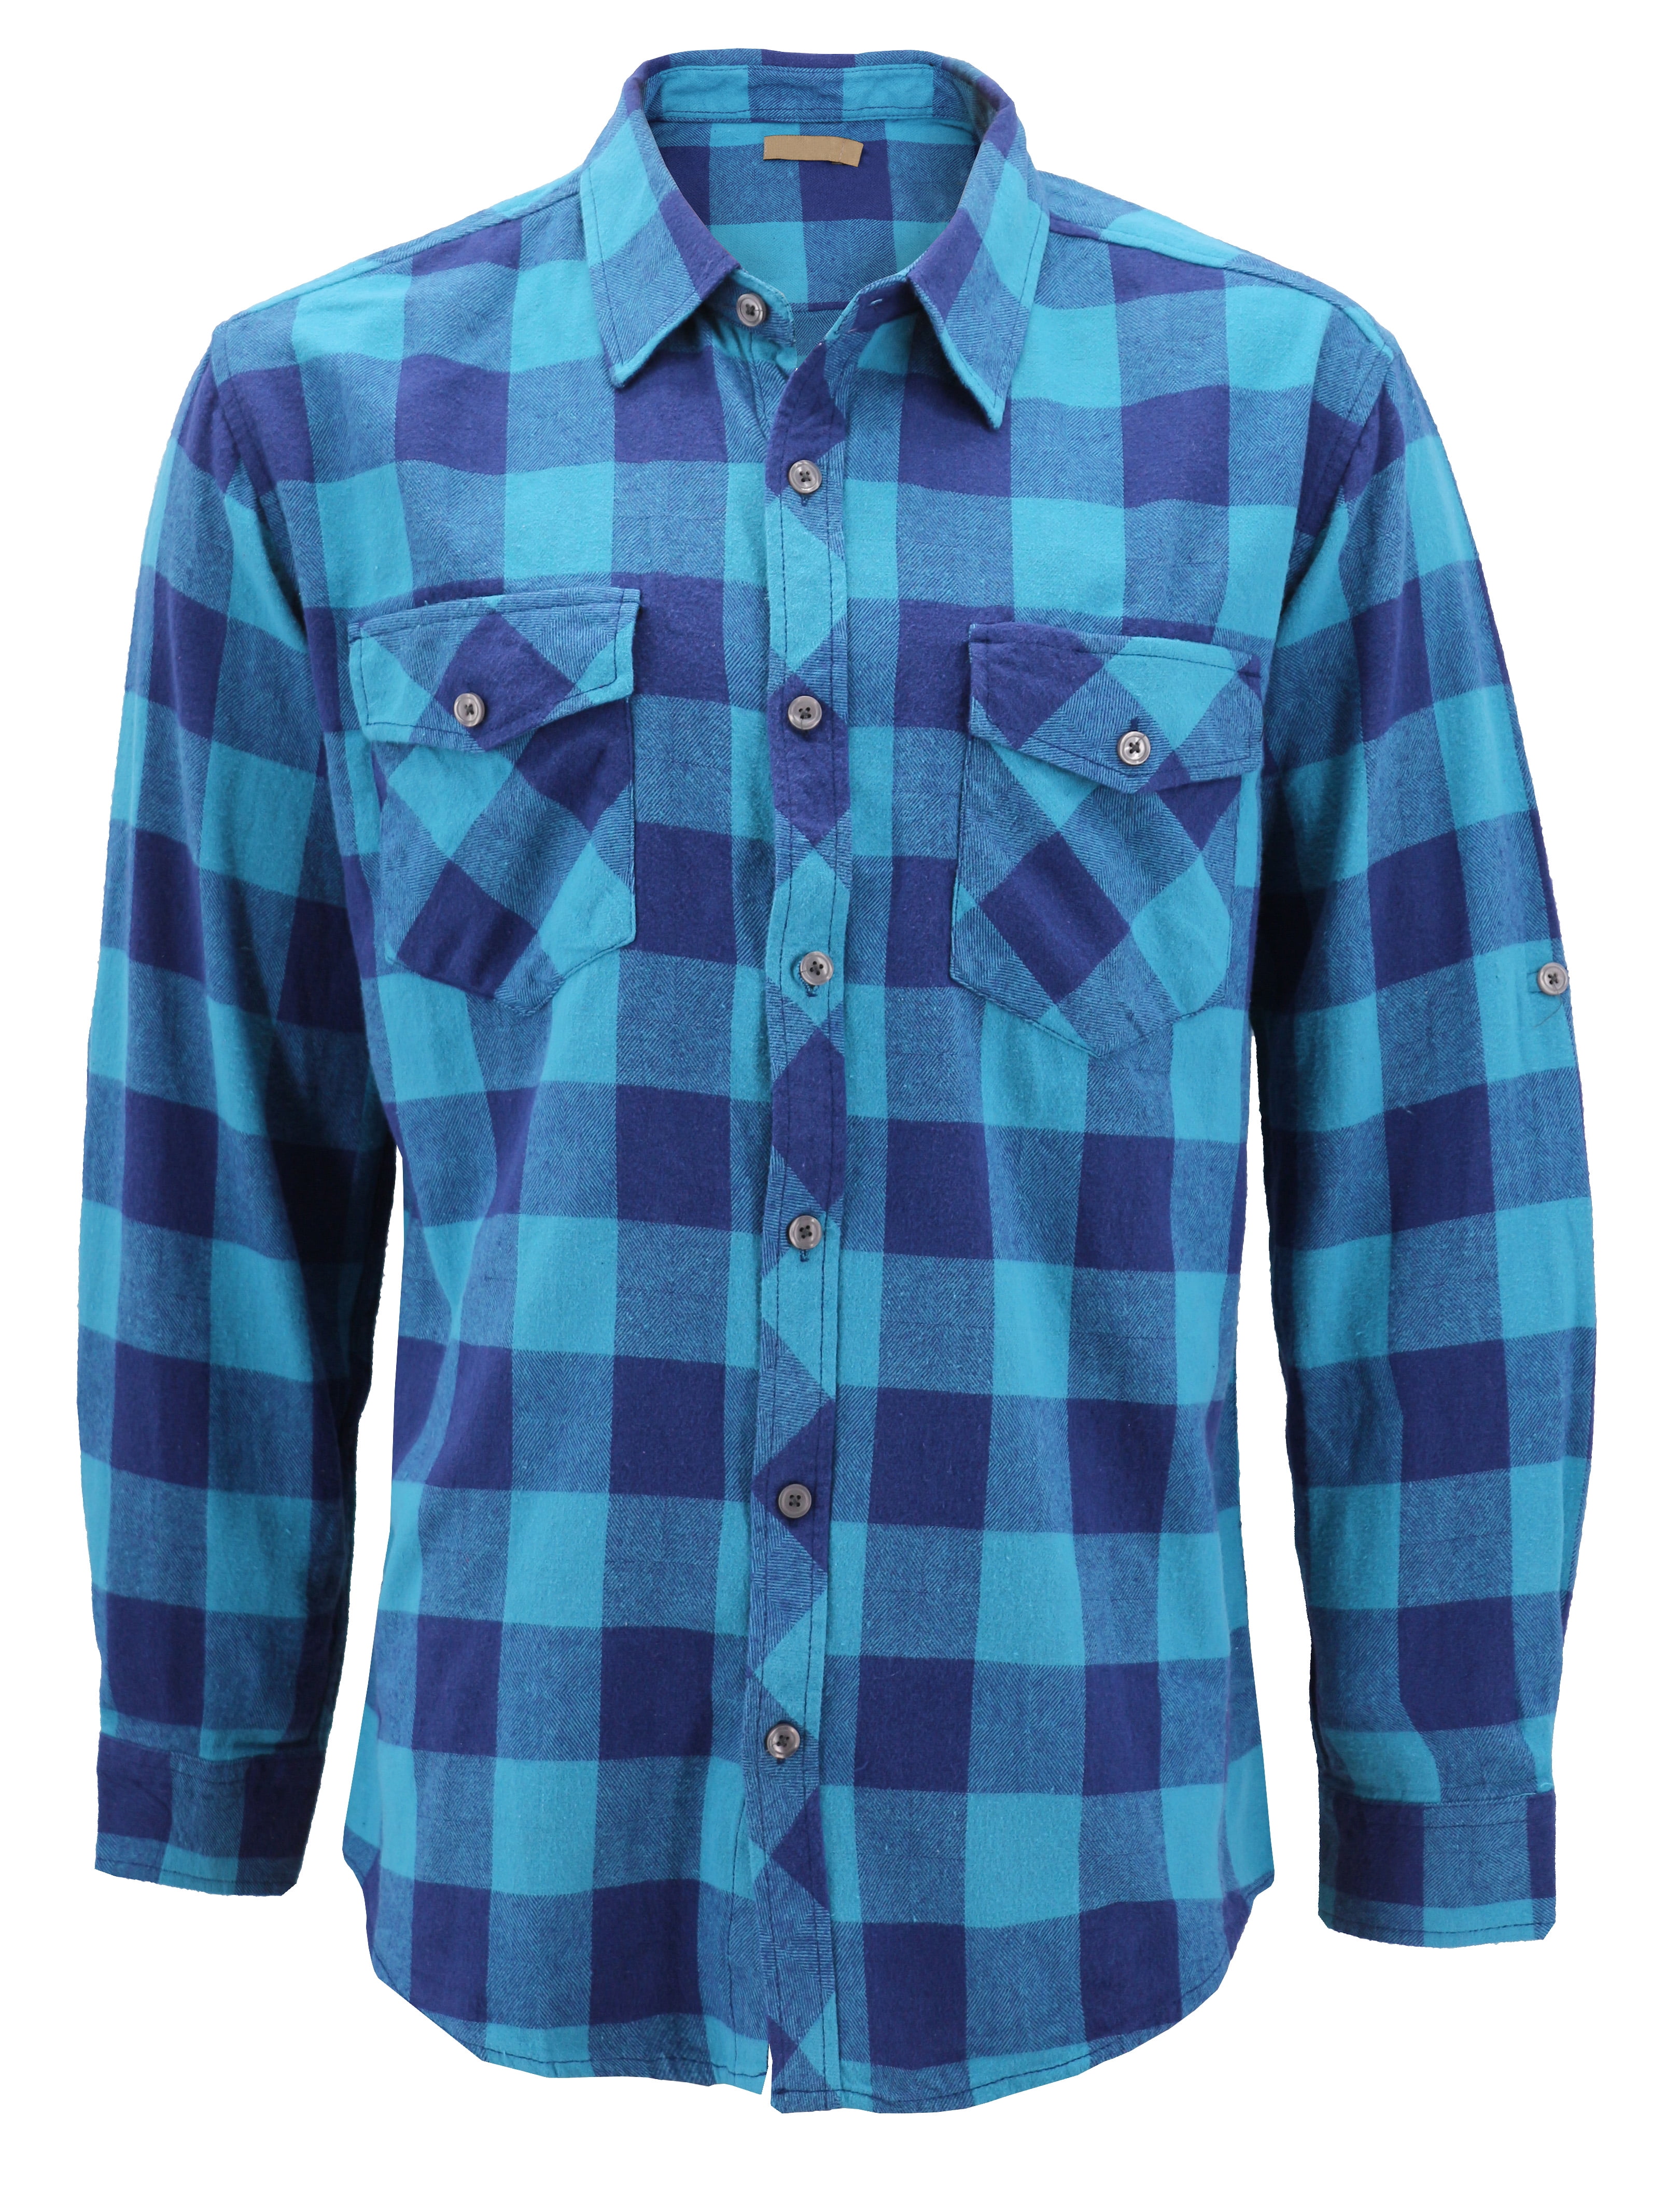 Men S Premium Cotton Button Up Long Sleeve Plaid Comfortable Flannel Shirt 2 Aqua Sky Blue